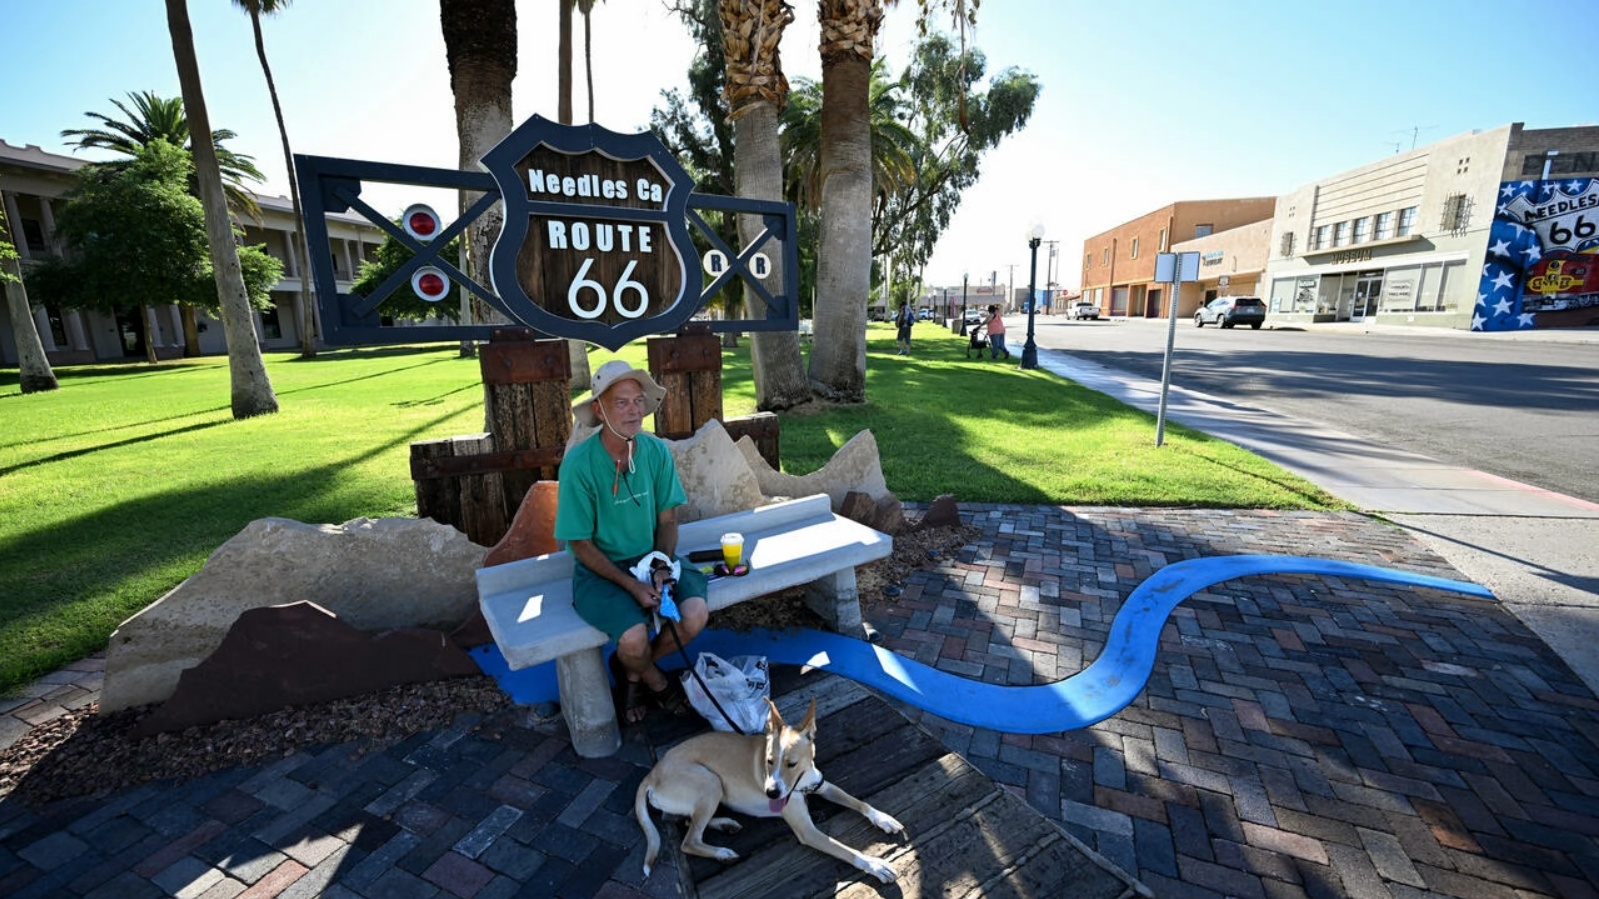 رجل في الظل مع كلبه في نيدلز في كاليفورنيا حيث سجلت أعلى درجات الحرارة التي تجاوزت 100 درجة فهرنهايت قبل الساعة 9 صباحًا في 31 أغسطس 2022 